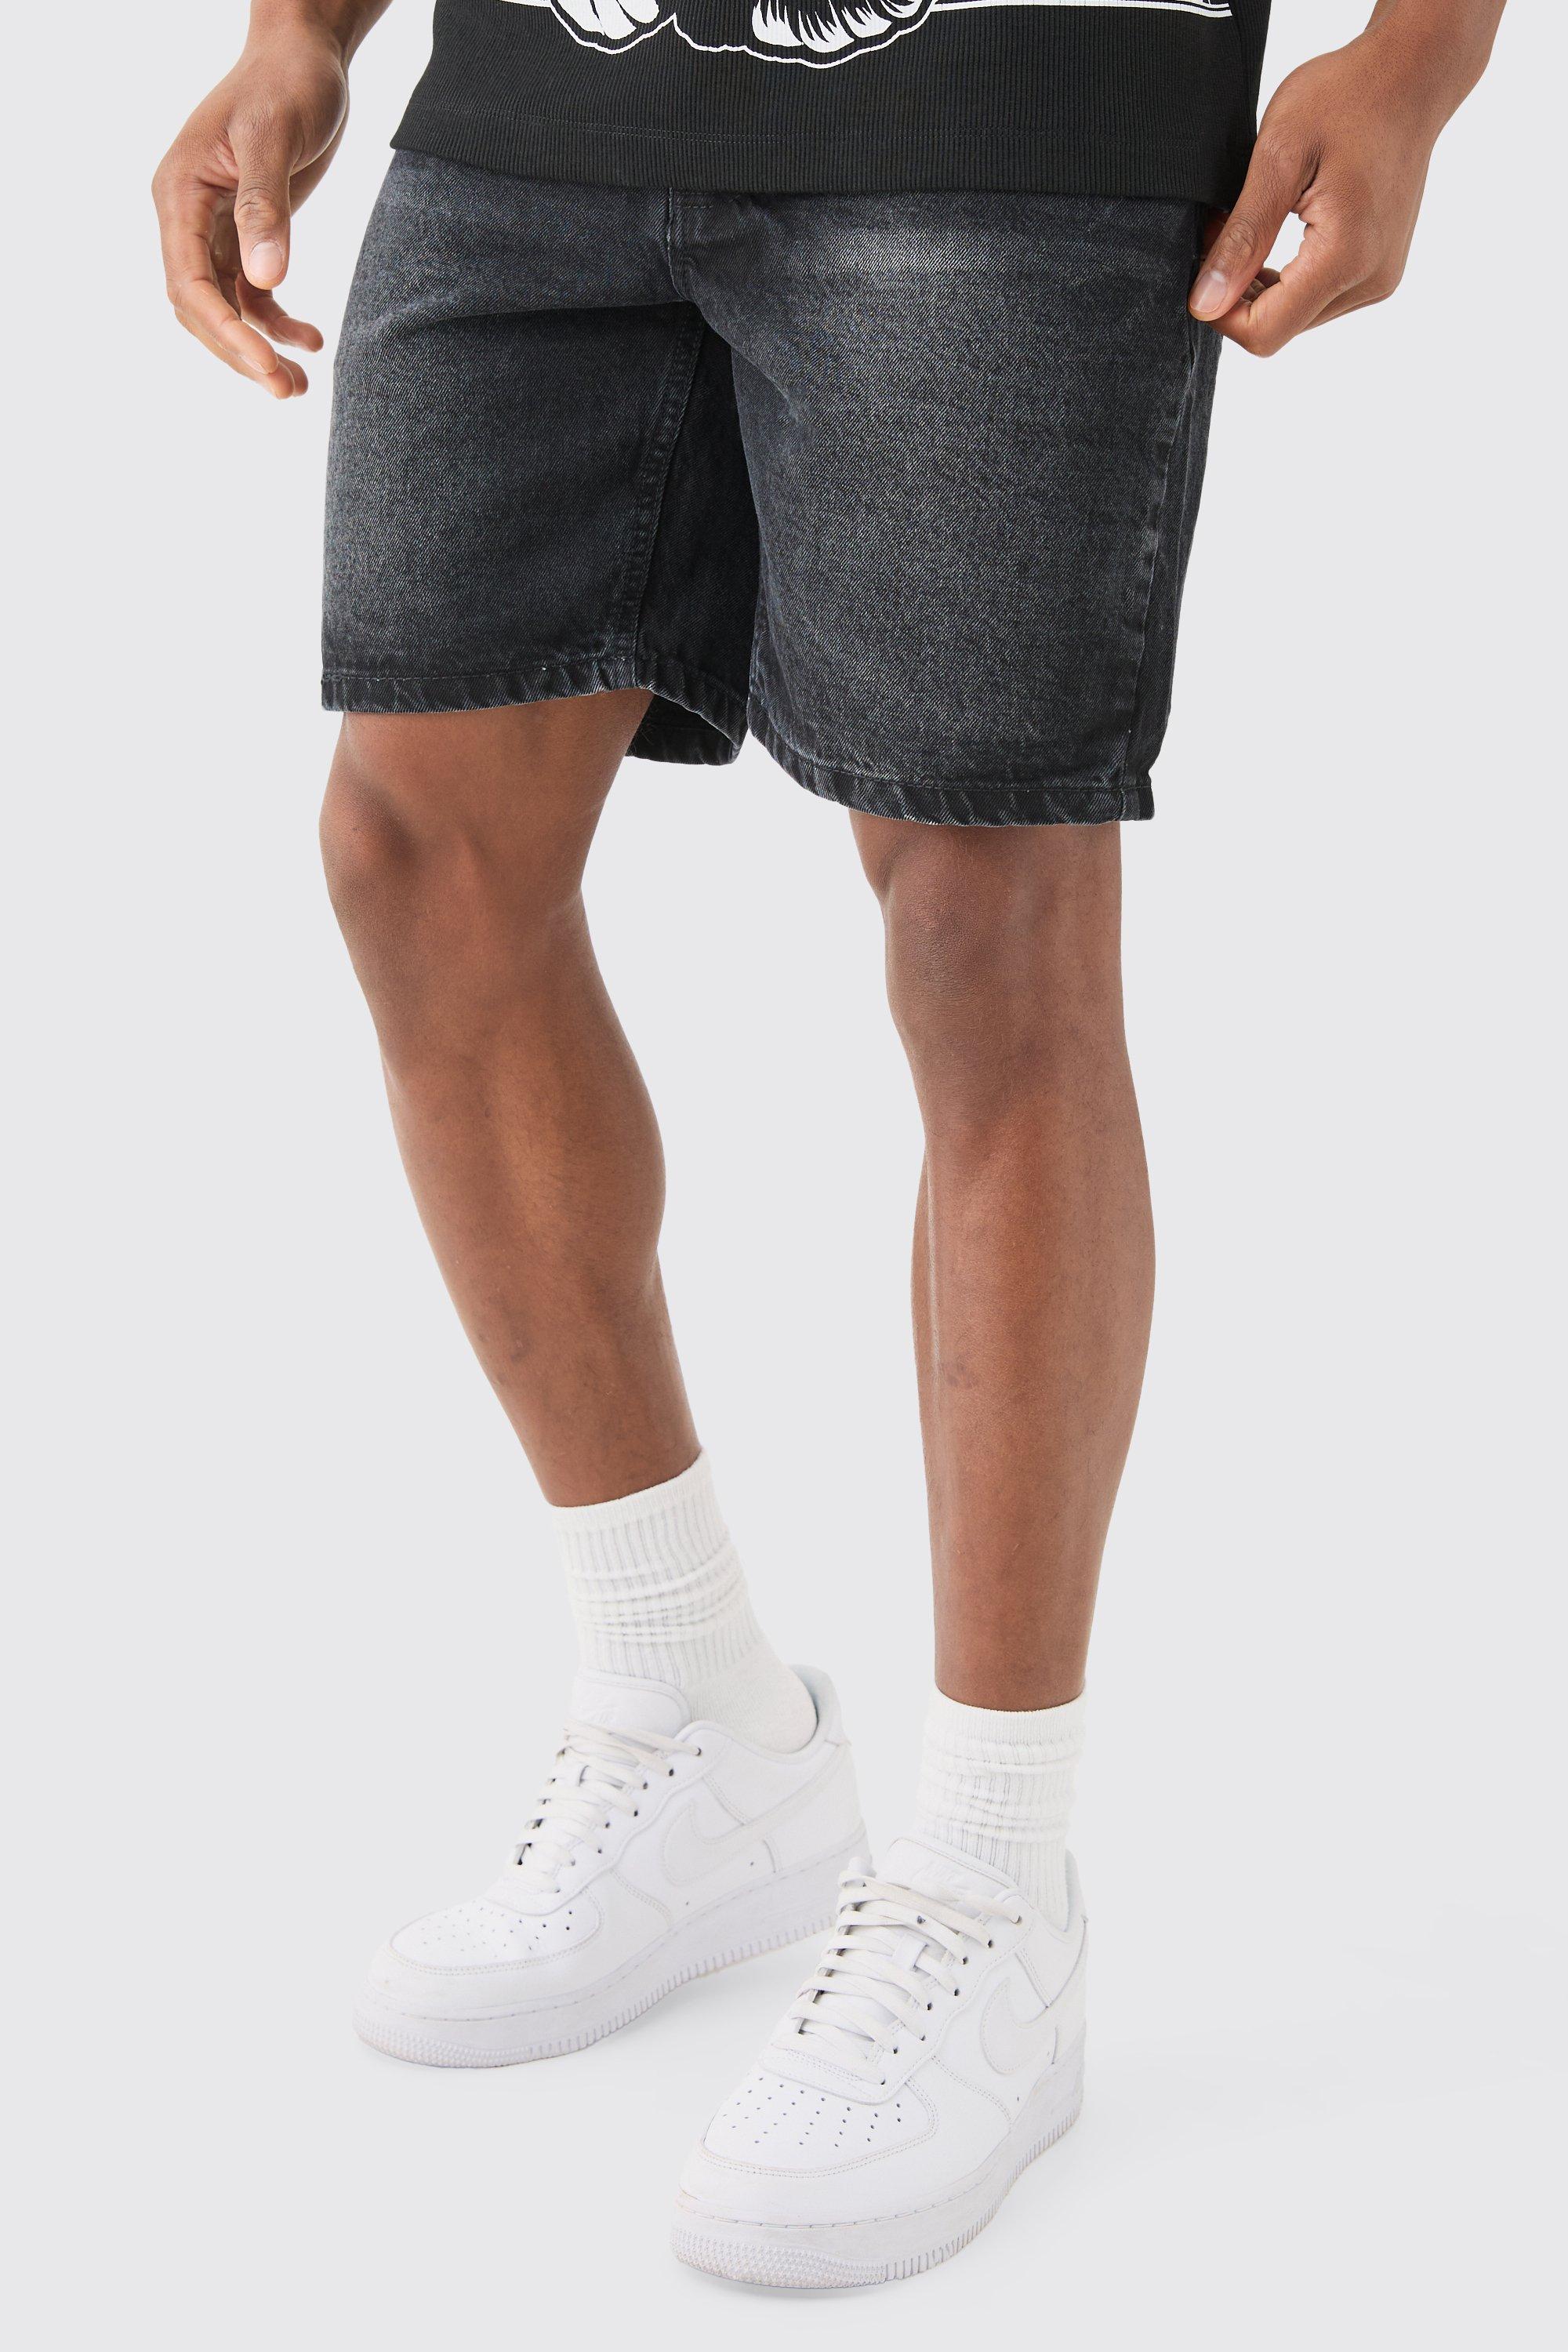 Image of Slim Rigid Denim Shorts In Charcoal, Grigio